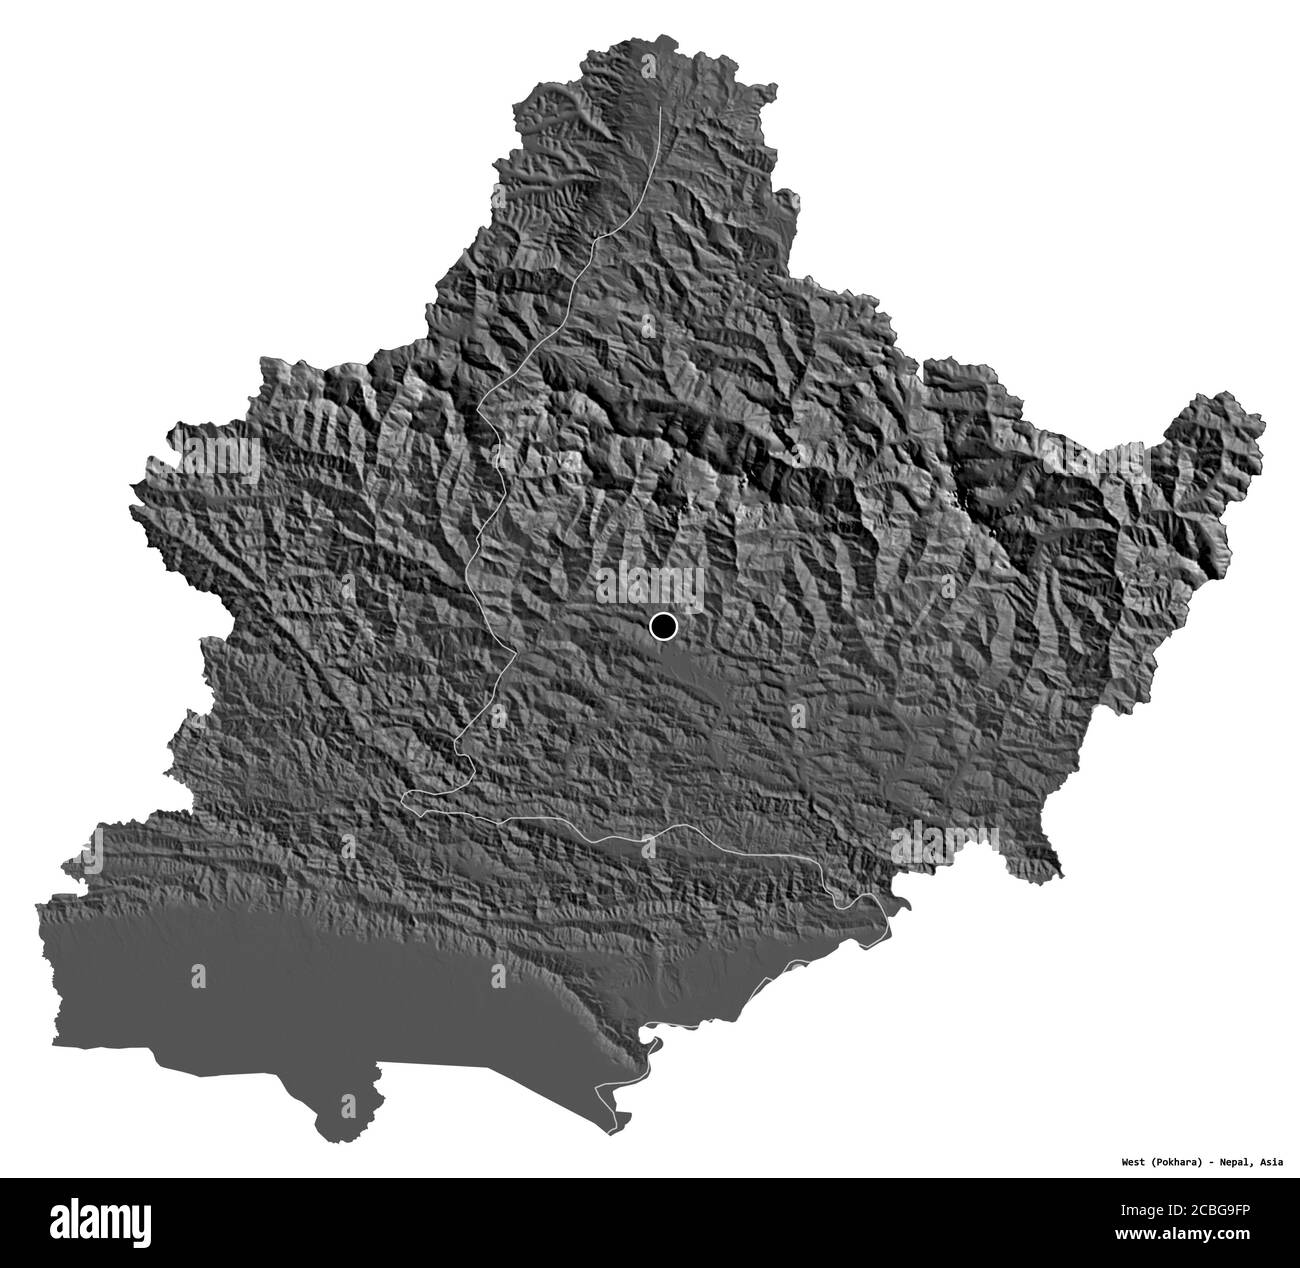 Forme de l'Ouest, région de développement du Népal, avec sa capitale isolée sur fond blanc. Carte d'élévation à deux niveaux. Rendu 3D Banque D'Images